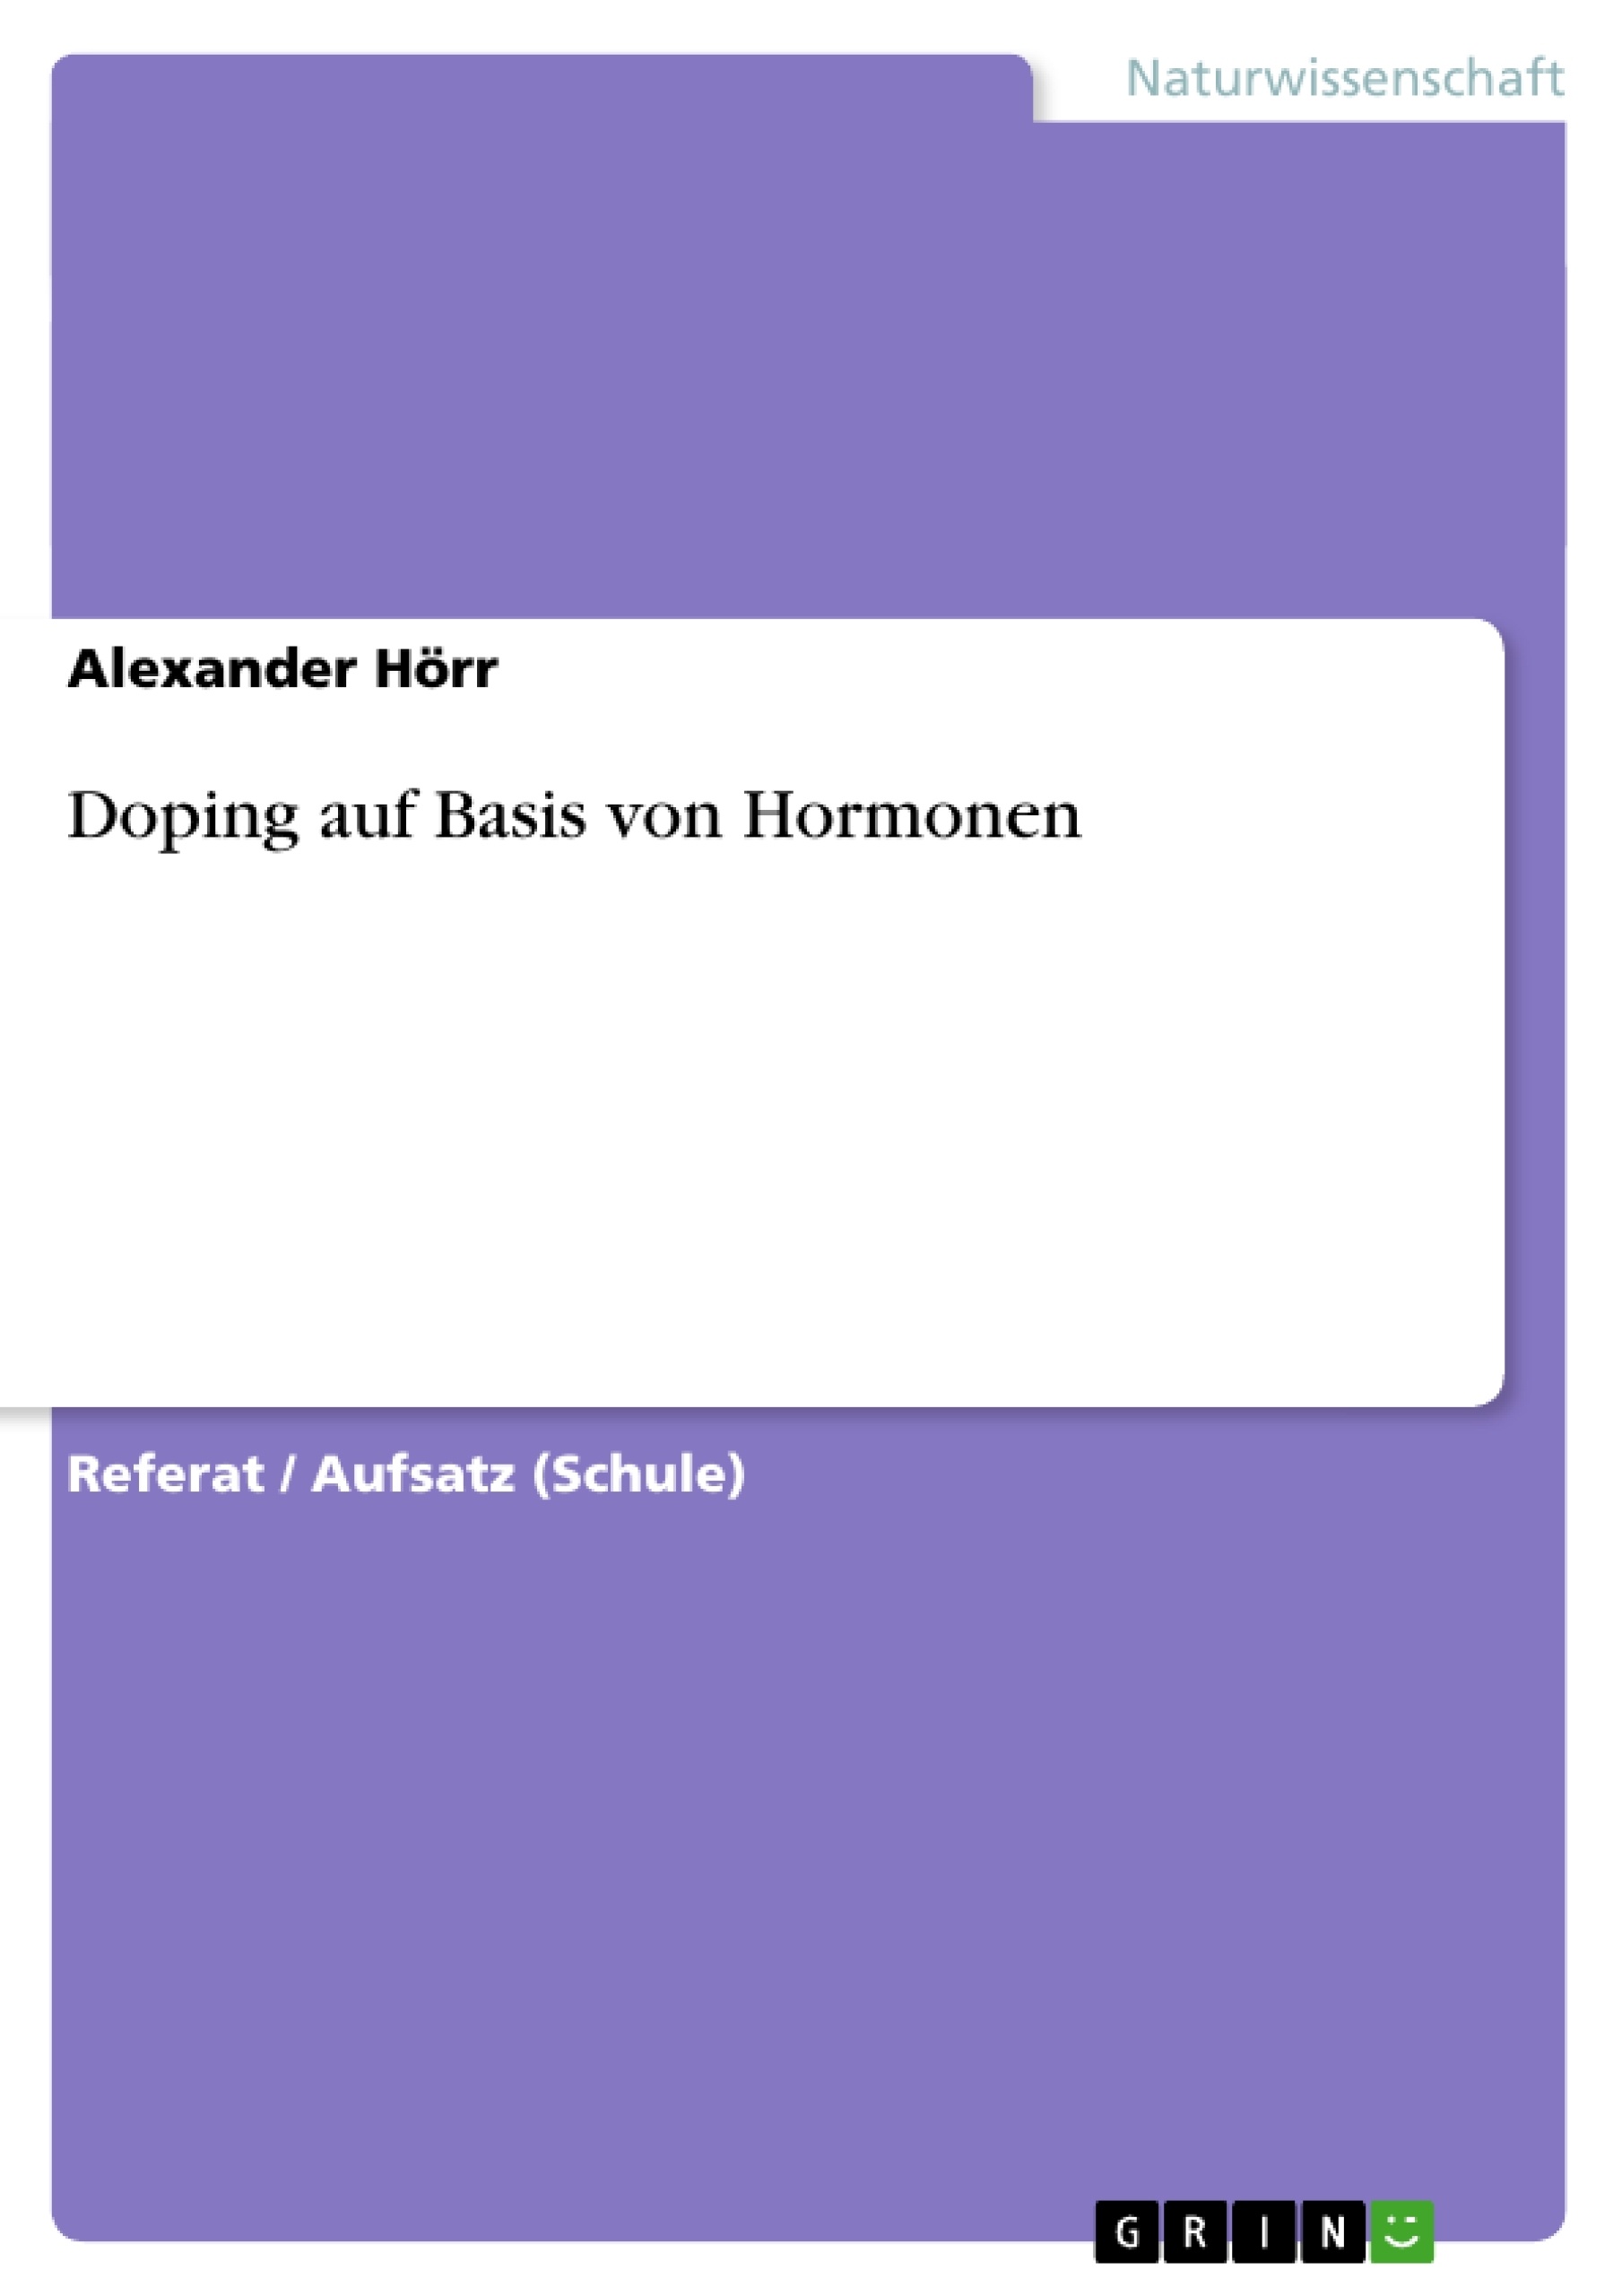 Title: Doping auf Basis von Hormonen